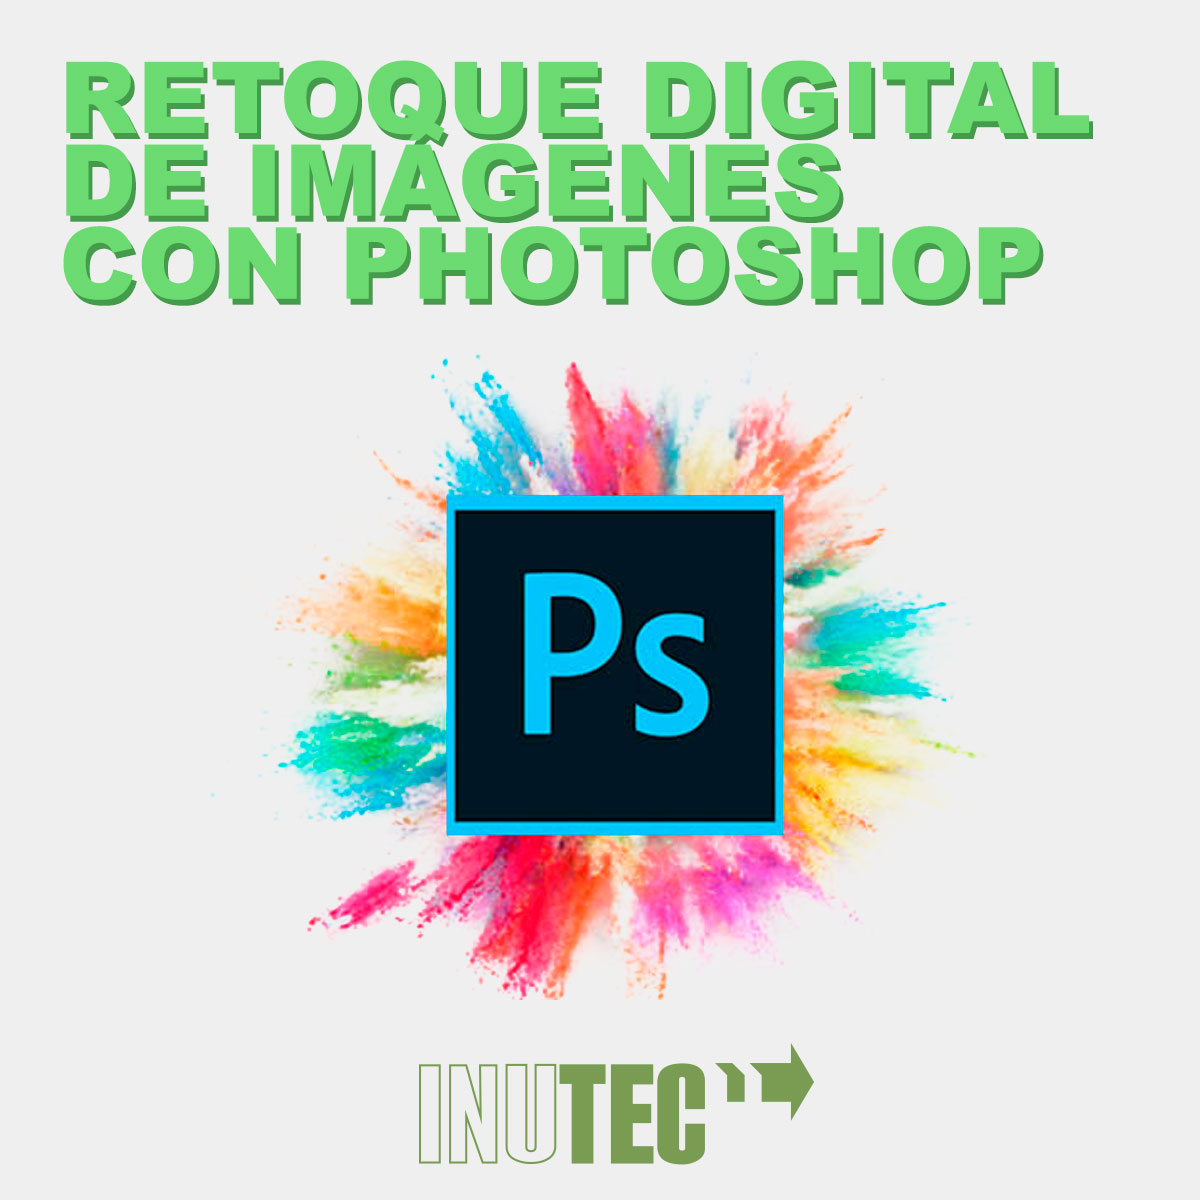 Retoque digital de imágenes con Photoshop | 70 horas.